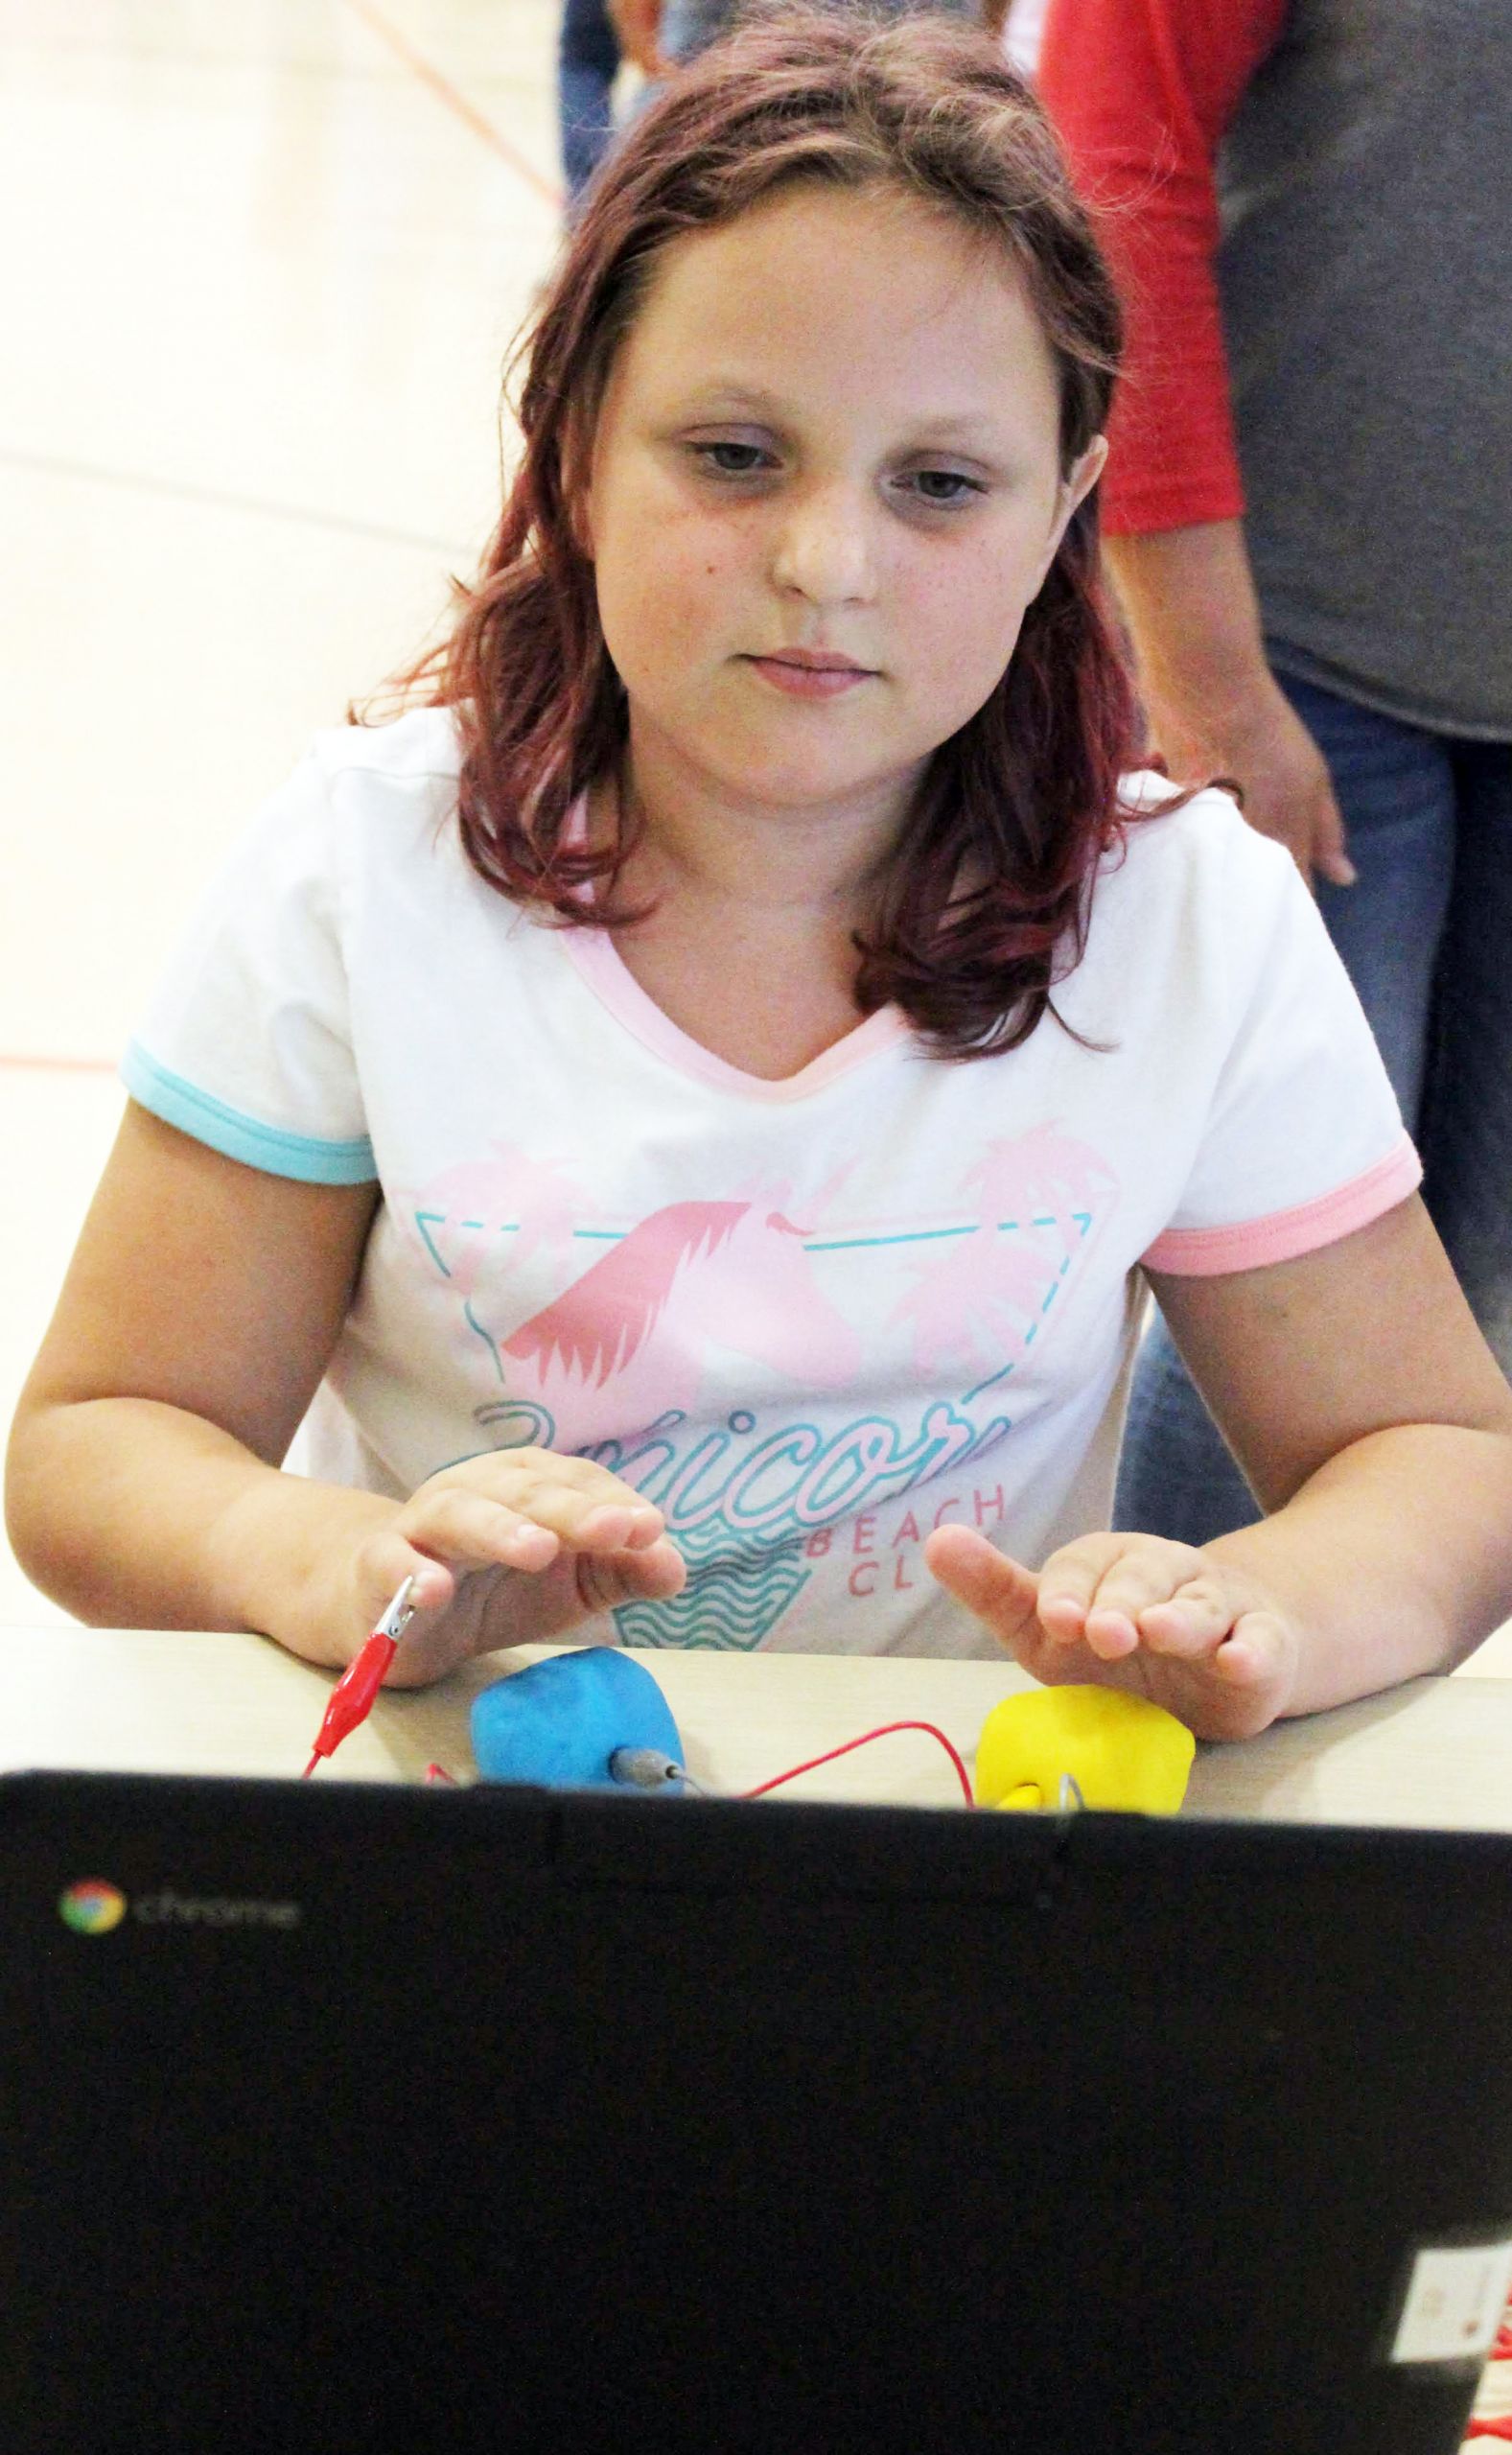 girl using computer - Kingston K-14